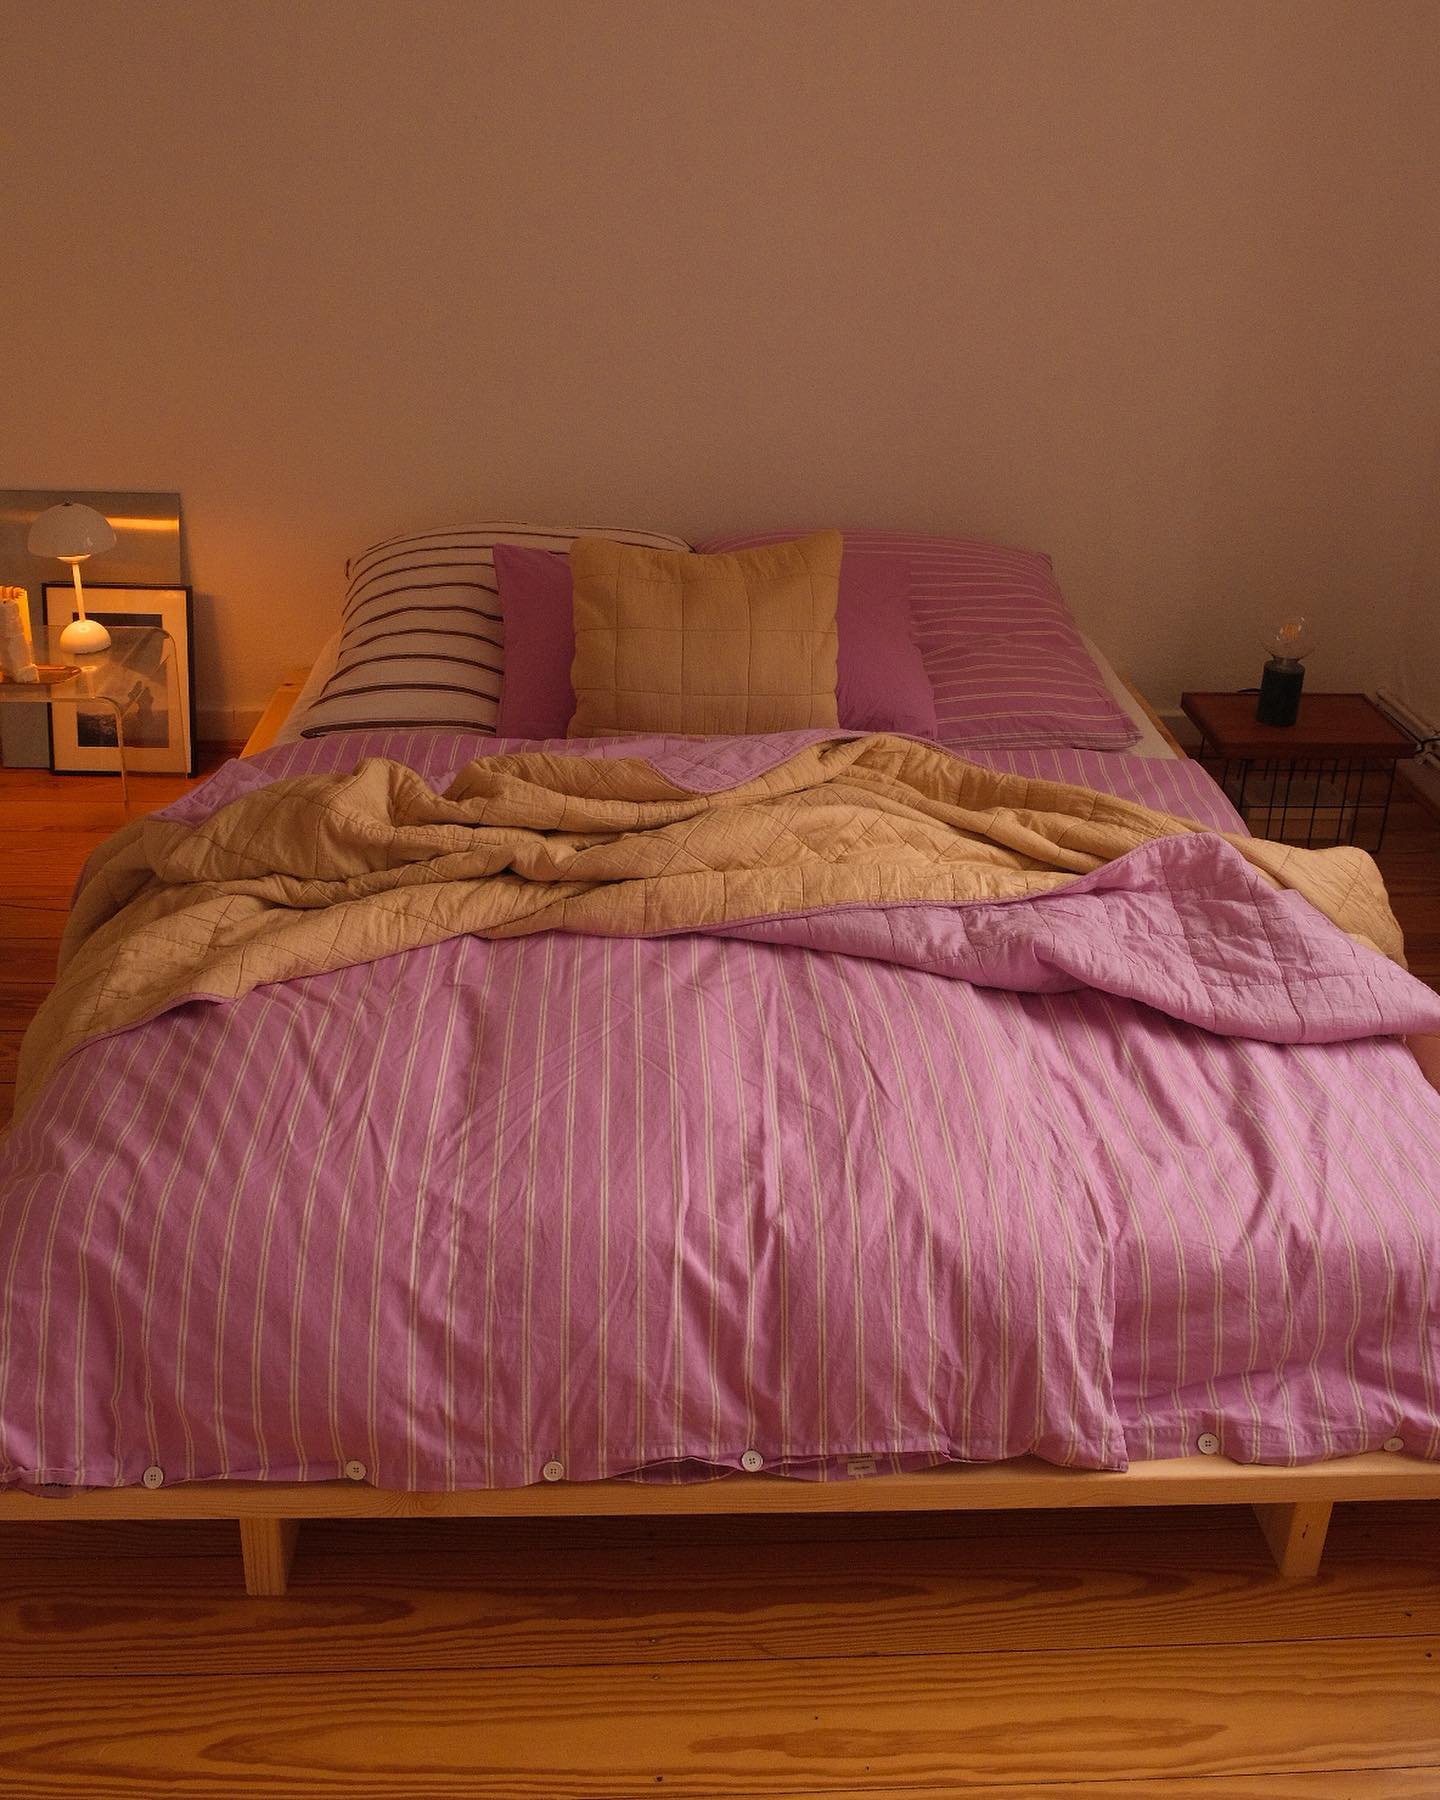 Beige Brown And Pink Bedroom Decor